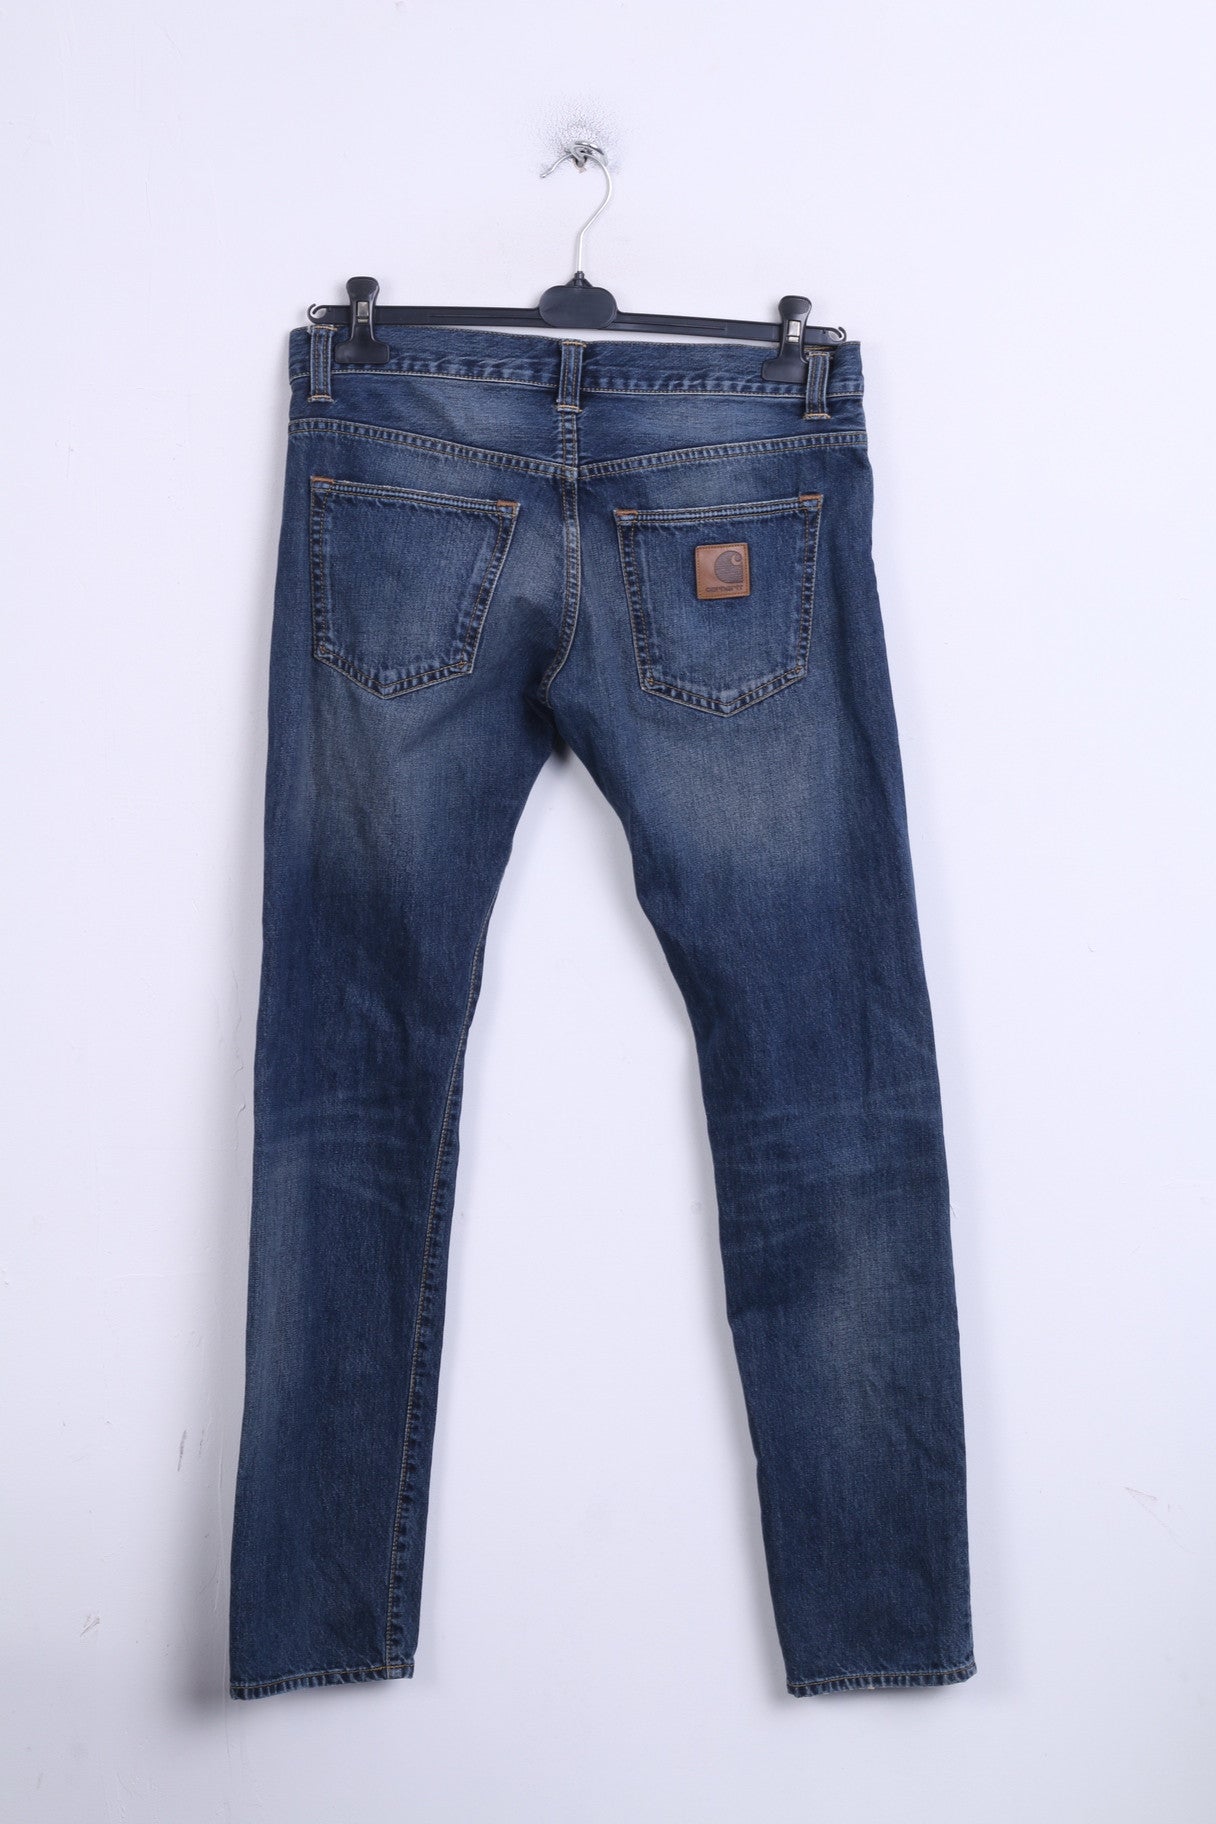 Carhartt Mens W29 L32 Trousers Cotton Denim Blue Jeans - RetrospectClothes